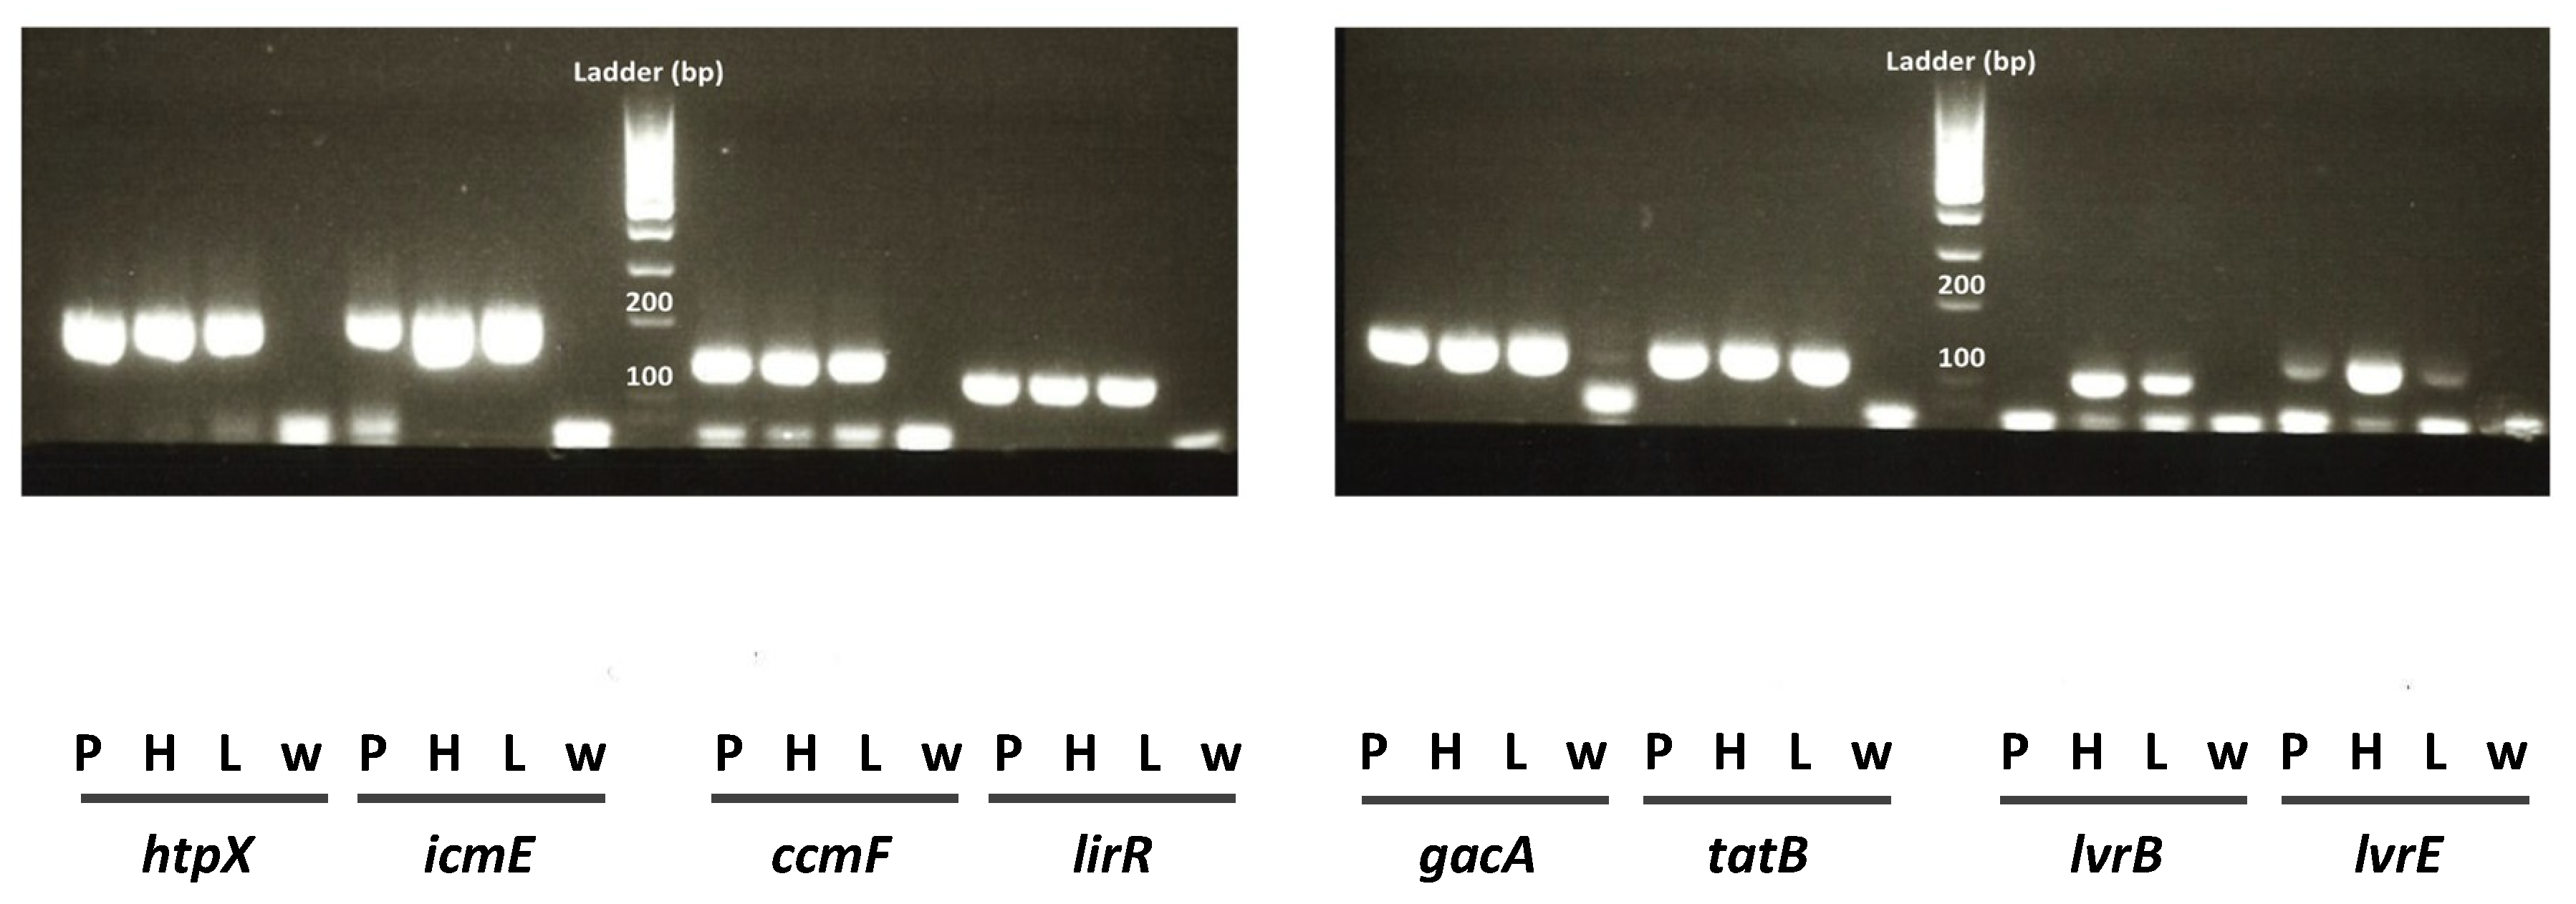 pbp3 gene and legionella